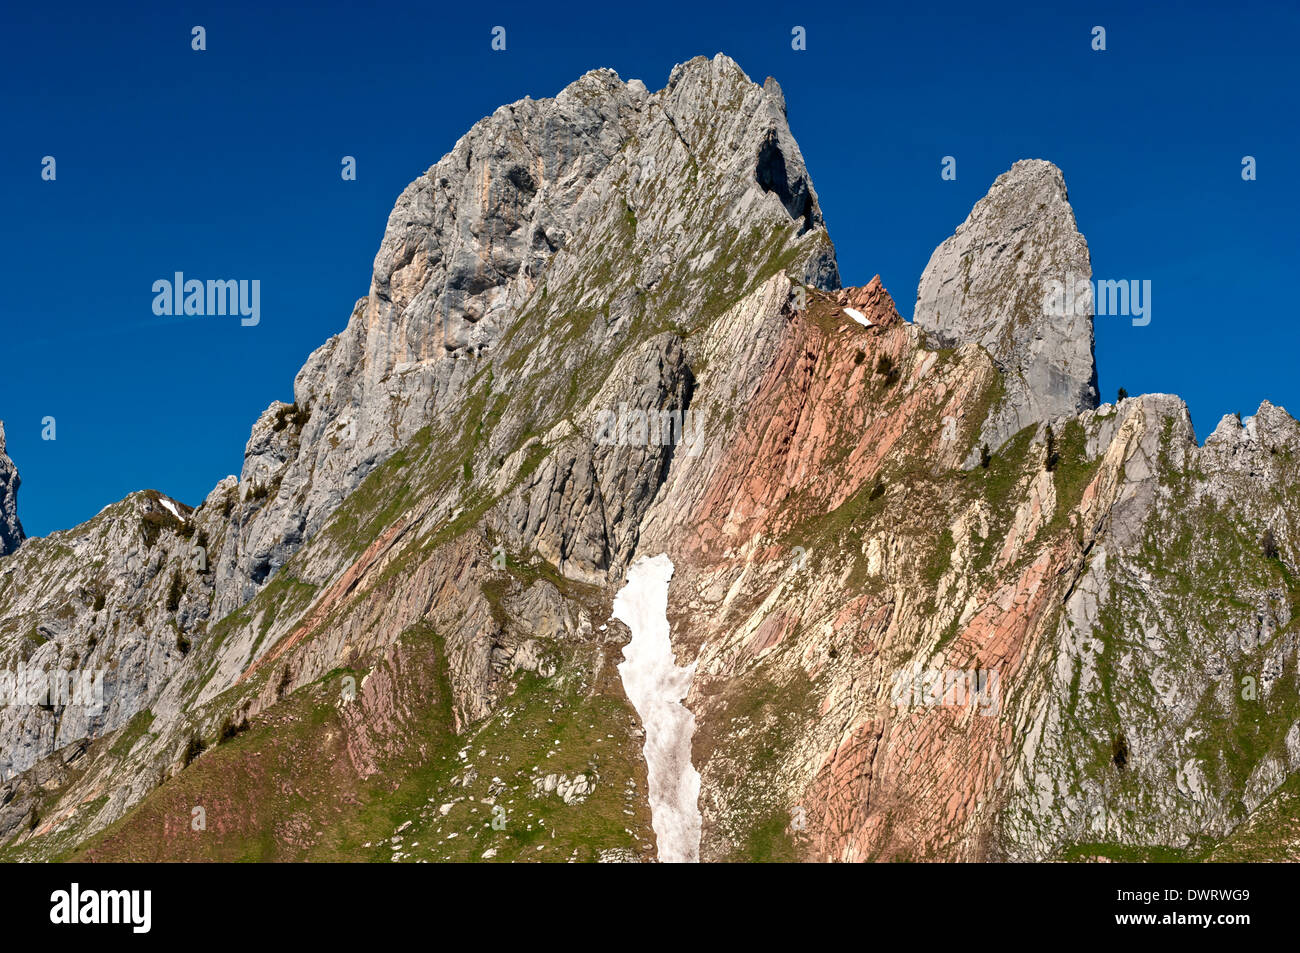 Dent de Ruth, Gastlosen limestone mountain range, Abländschen, Switzerland Stock Photo